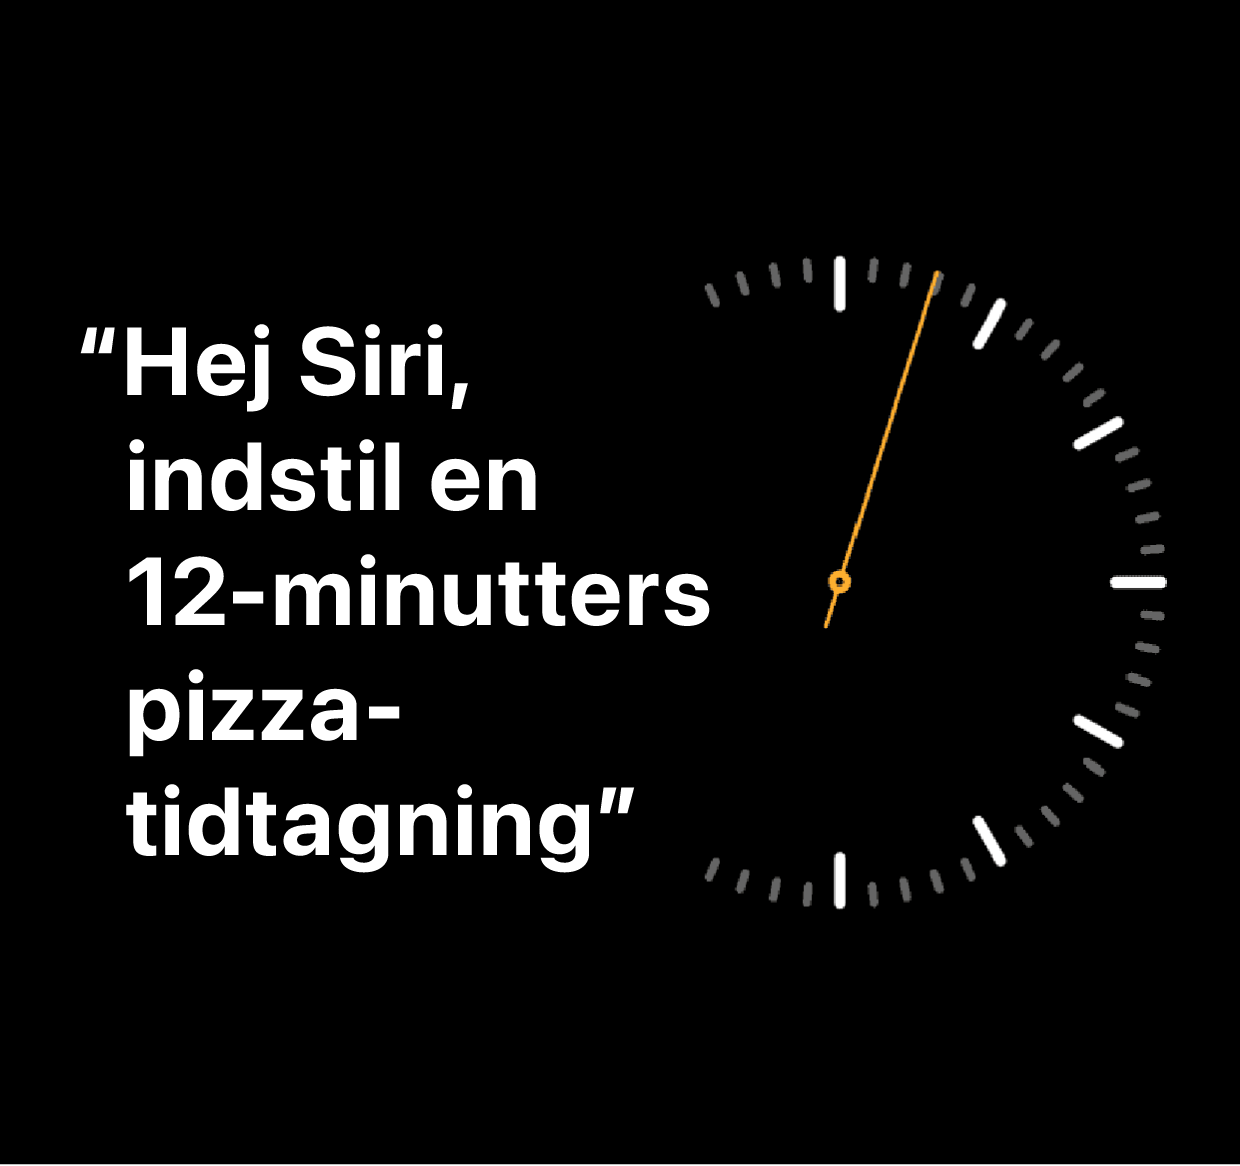 En illustration med ordene “Hej Siri, indstil en 12-minutters pizza-tidtagning”.